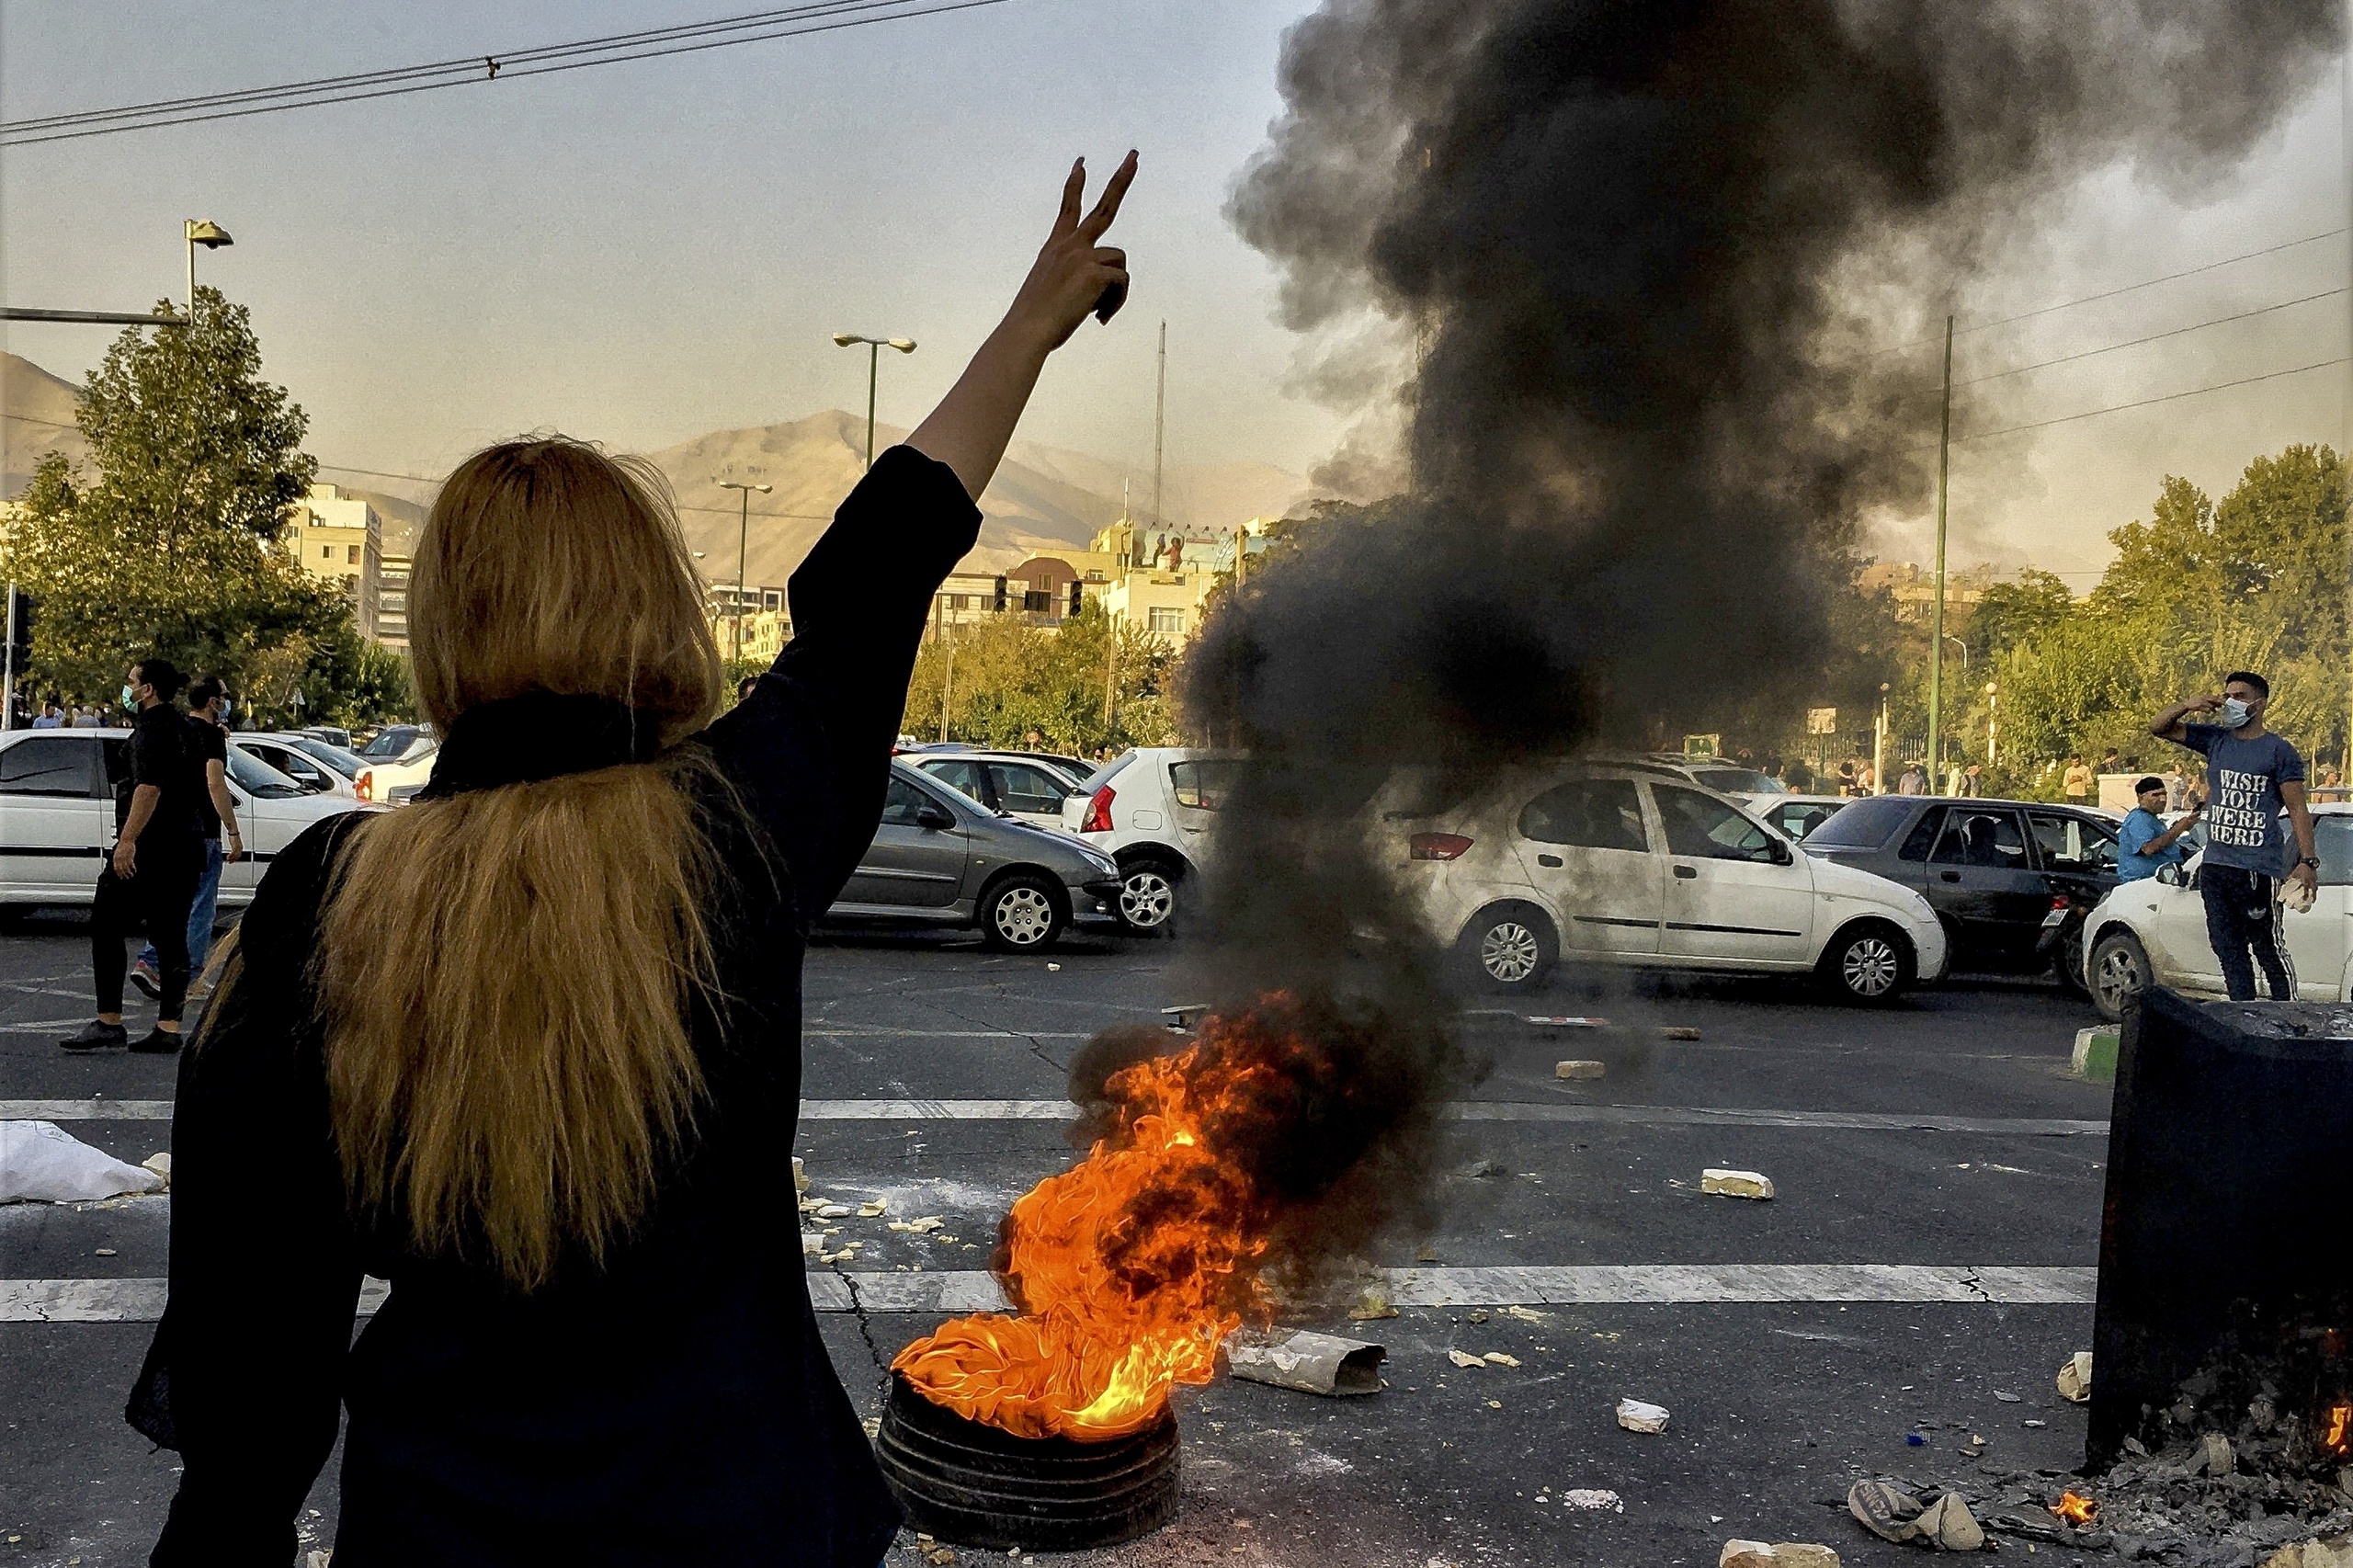 Bij de bloedige demonstraties in Iran beschieten veiligheidsdiensten vrouwelijke demonstranten in het gezicht, borsten en geslacht. De Britse krant The Guardian schrijft dat er reden is om aan te nemen dat dit opzettelijk is. 